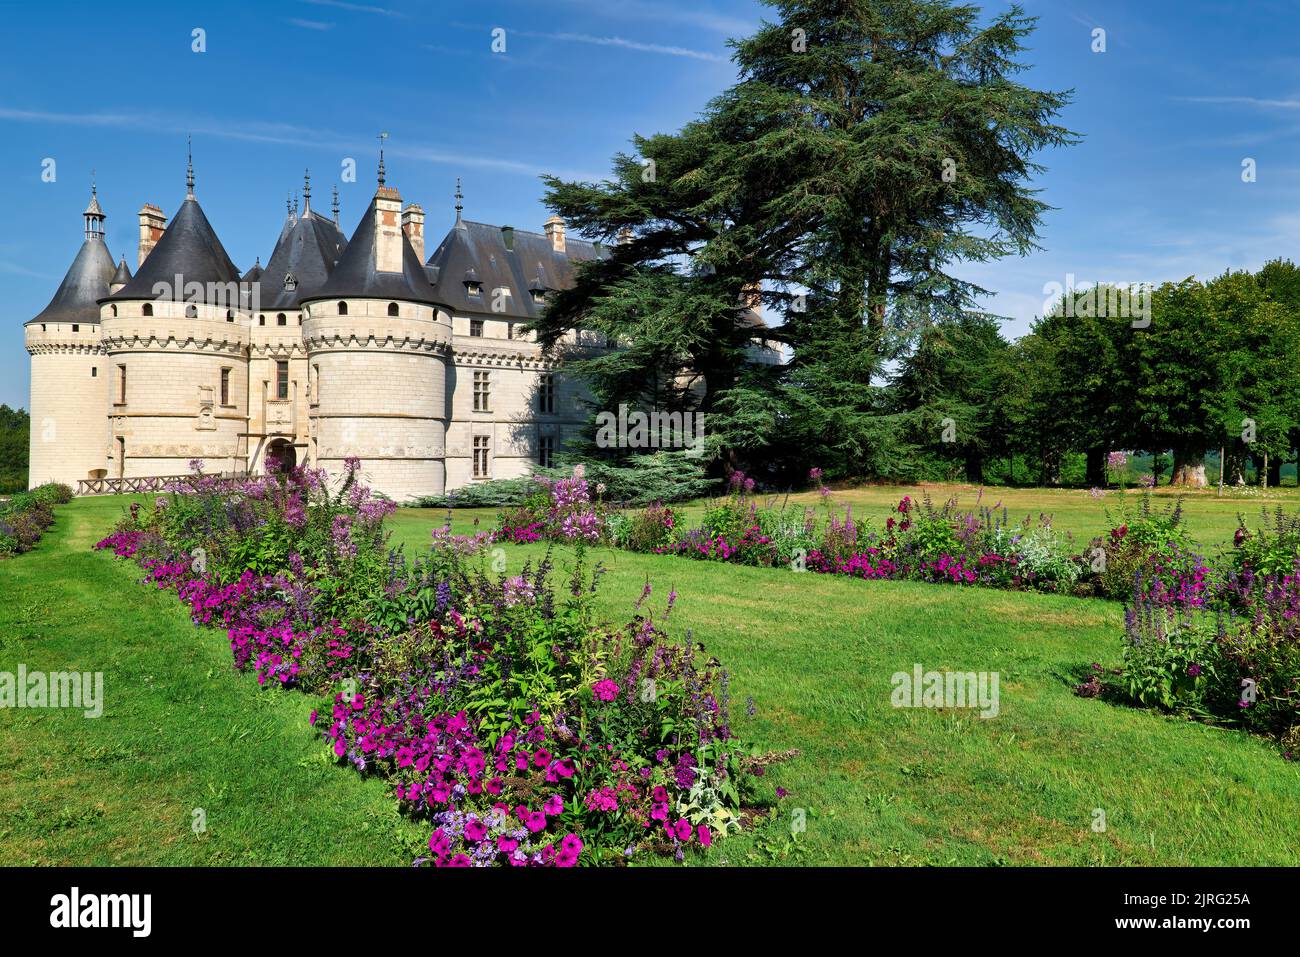 Chaumont Francia. Castillo de Chaumont sur Loire Foto de stock